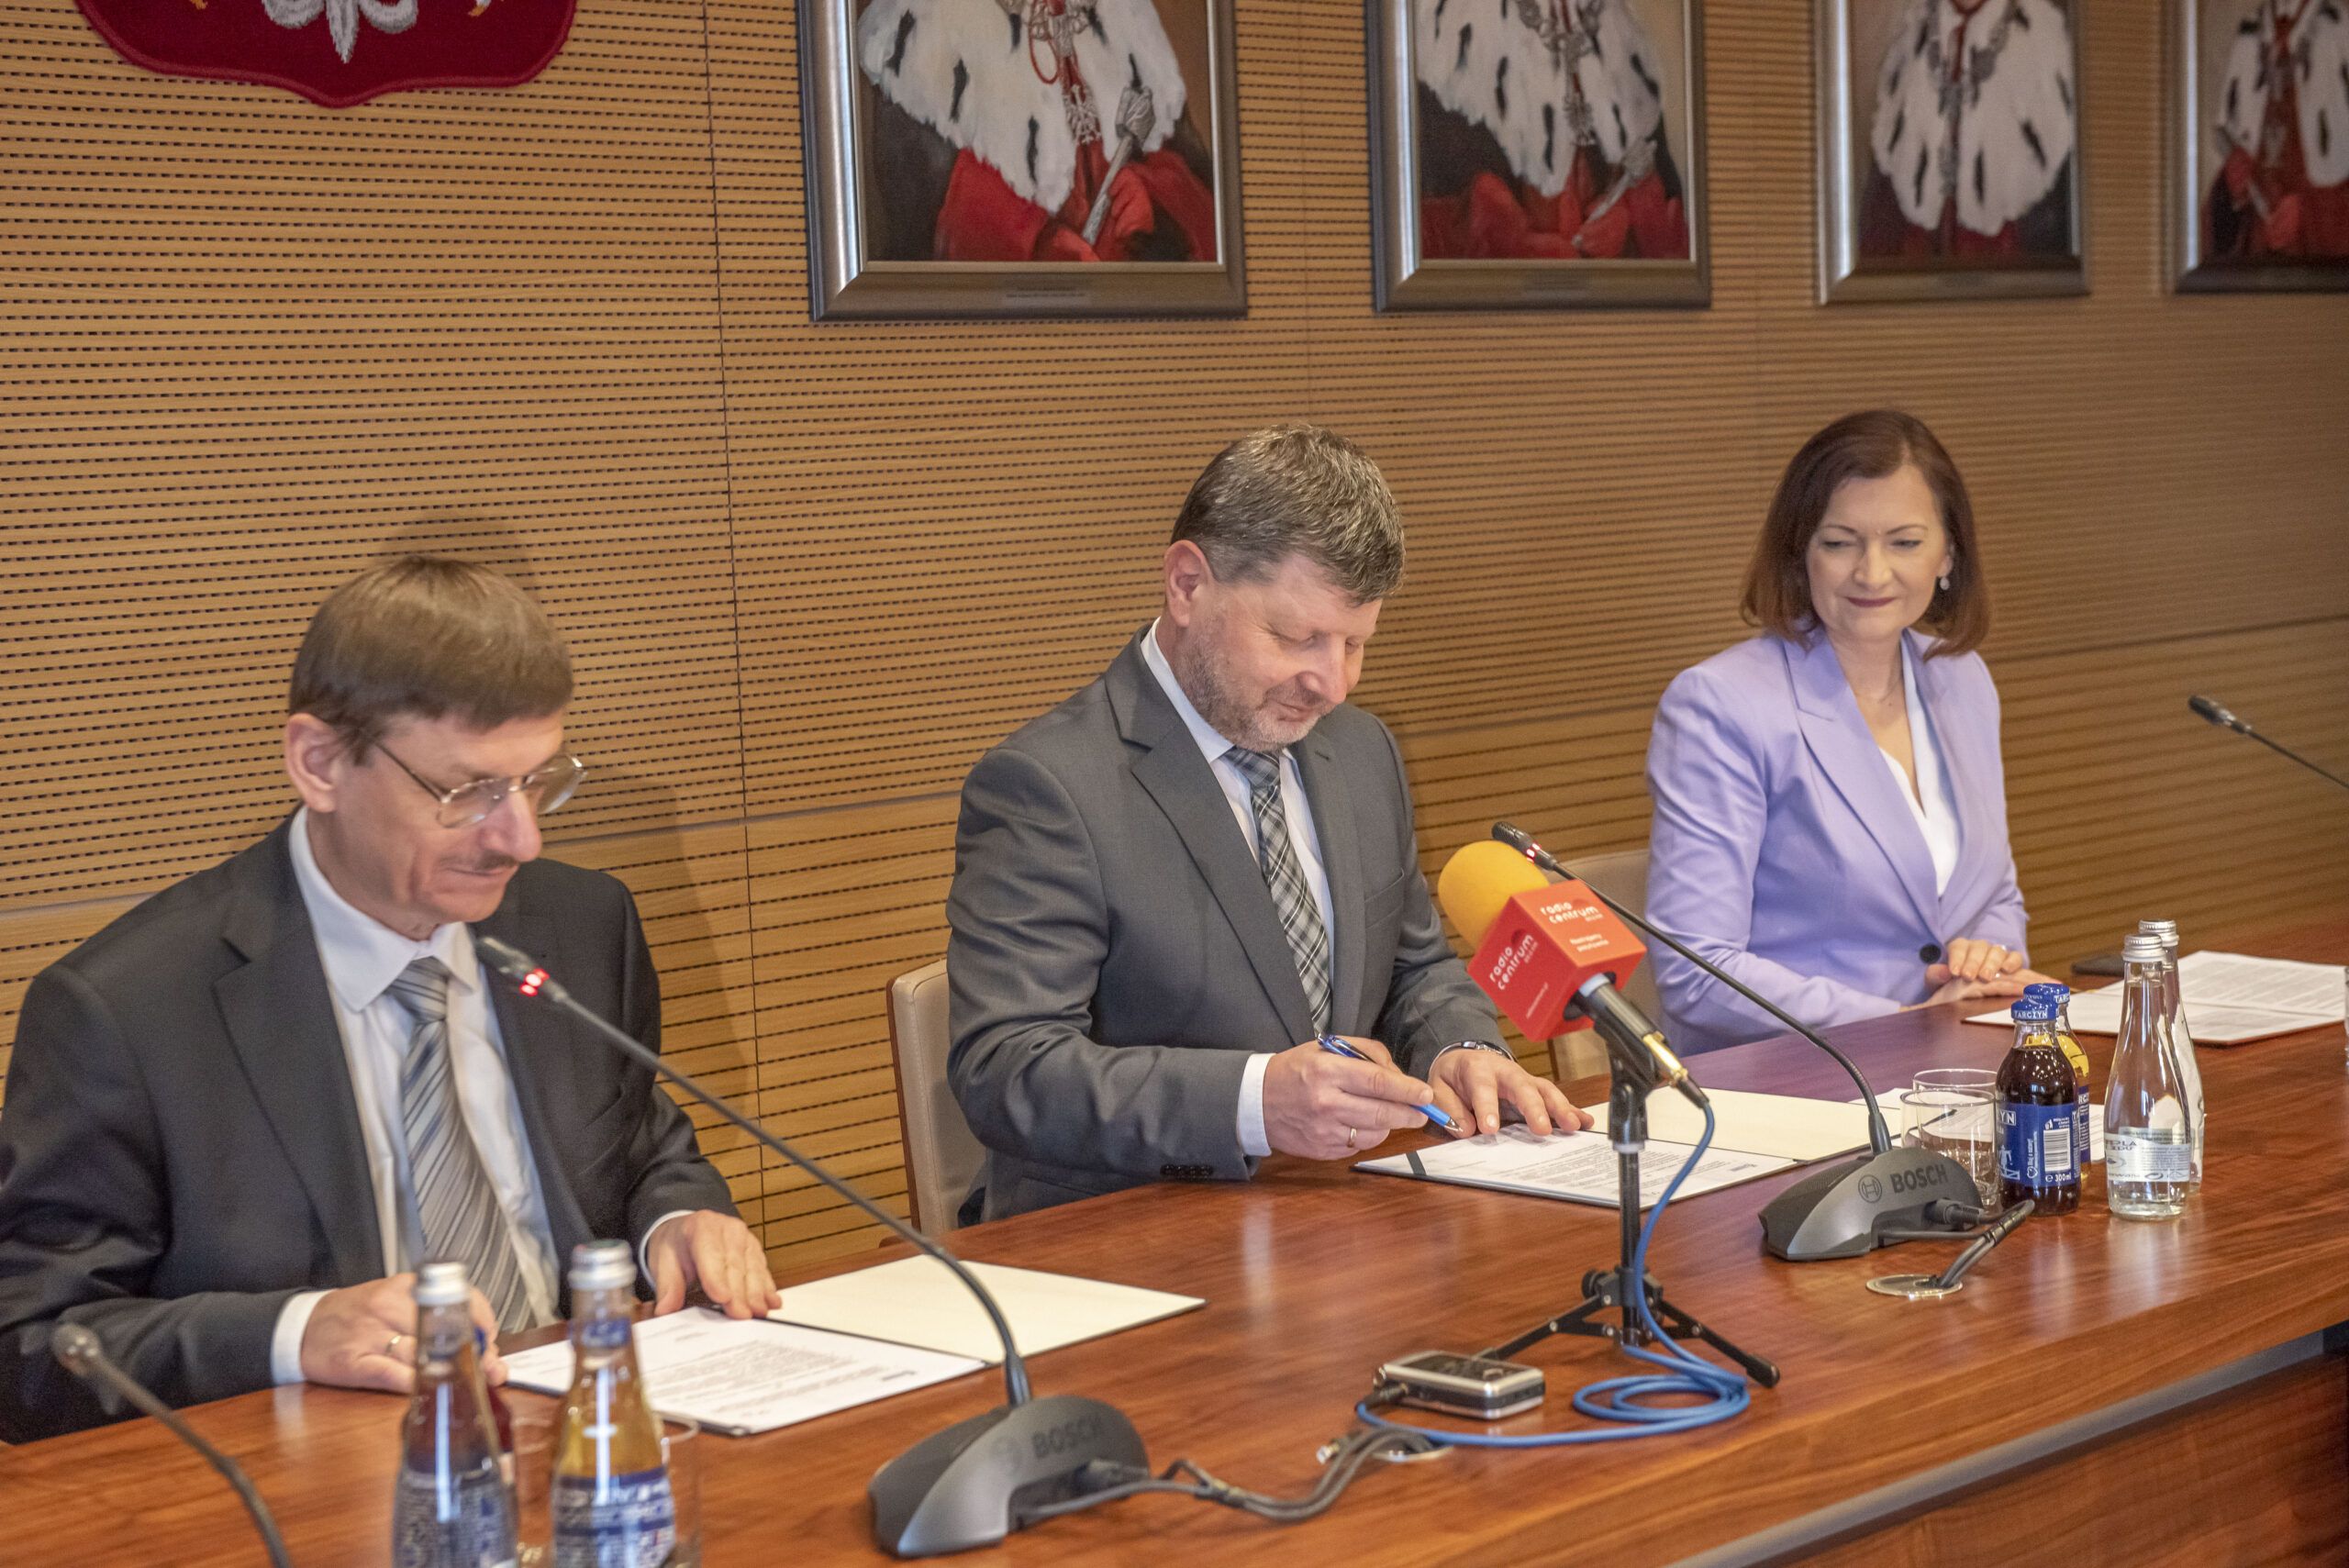 Porozumienie między POLSA a Politechniką Rzeszowską w sprawie budowy obserwatorium